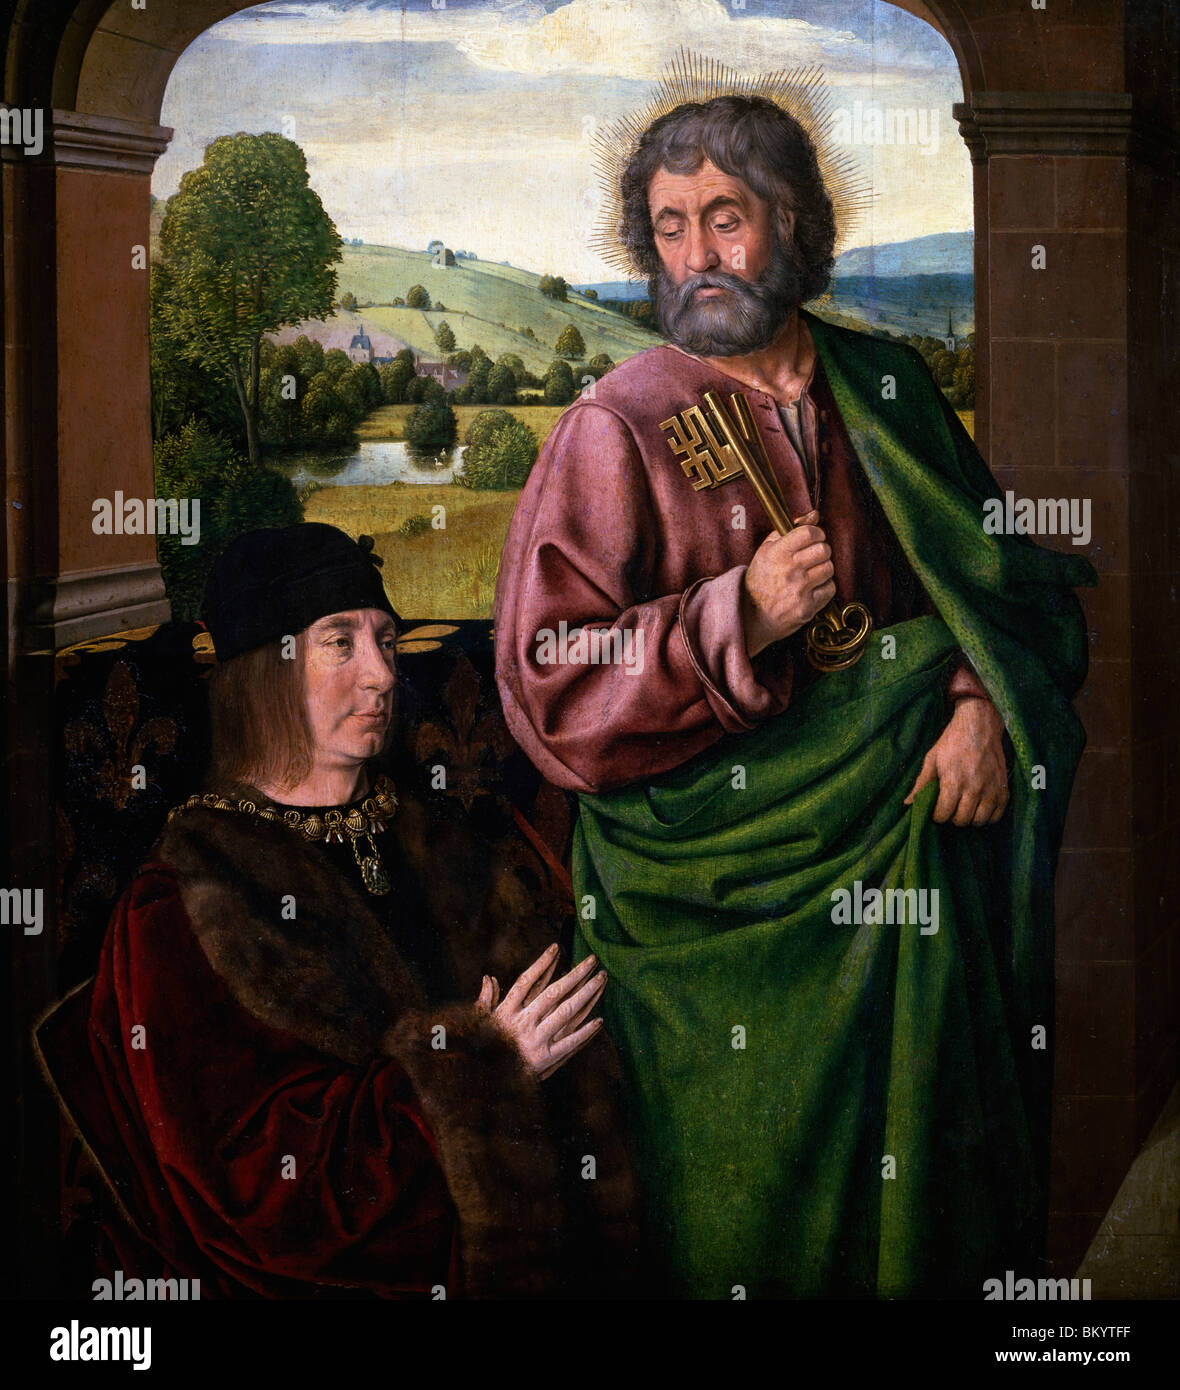 Ritratto di Pierre II, duca di Borbone con San Pietro da Jean Hey, circa 1492-1493, Francia, Parigi Musee du Louvre Foto Stock